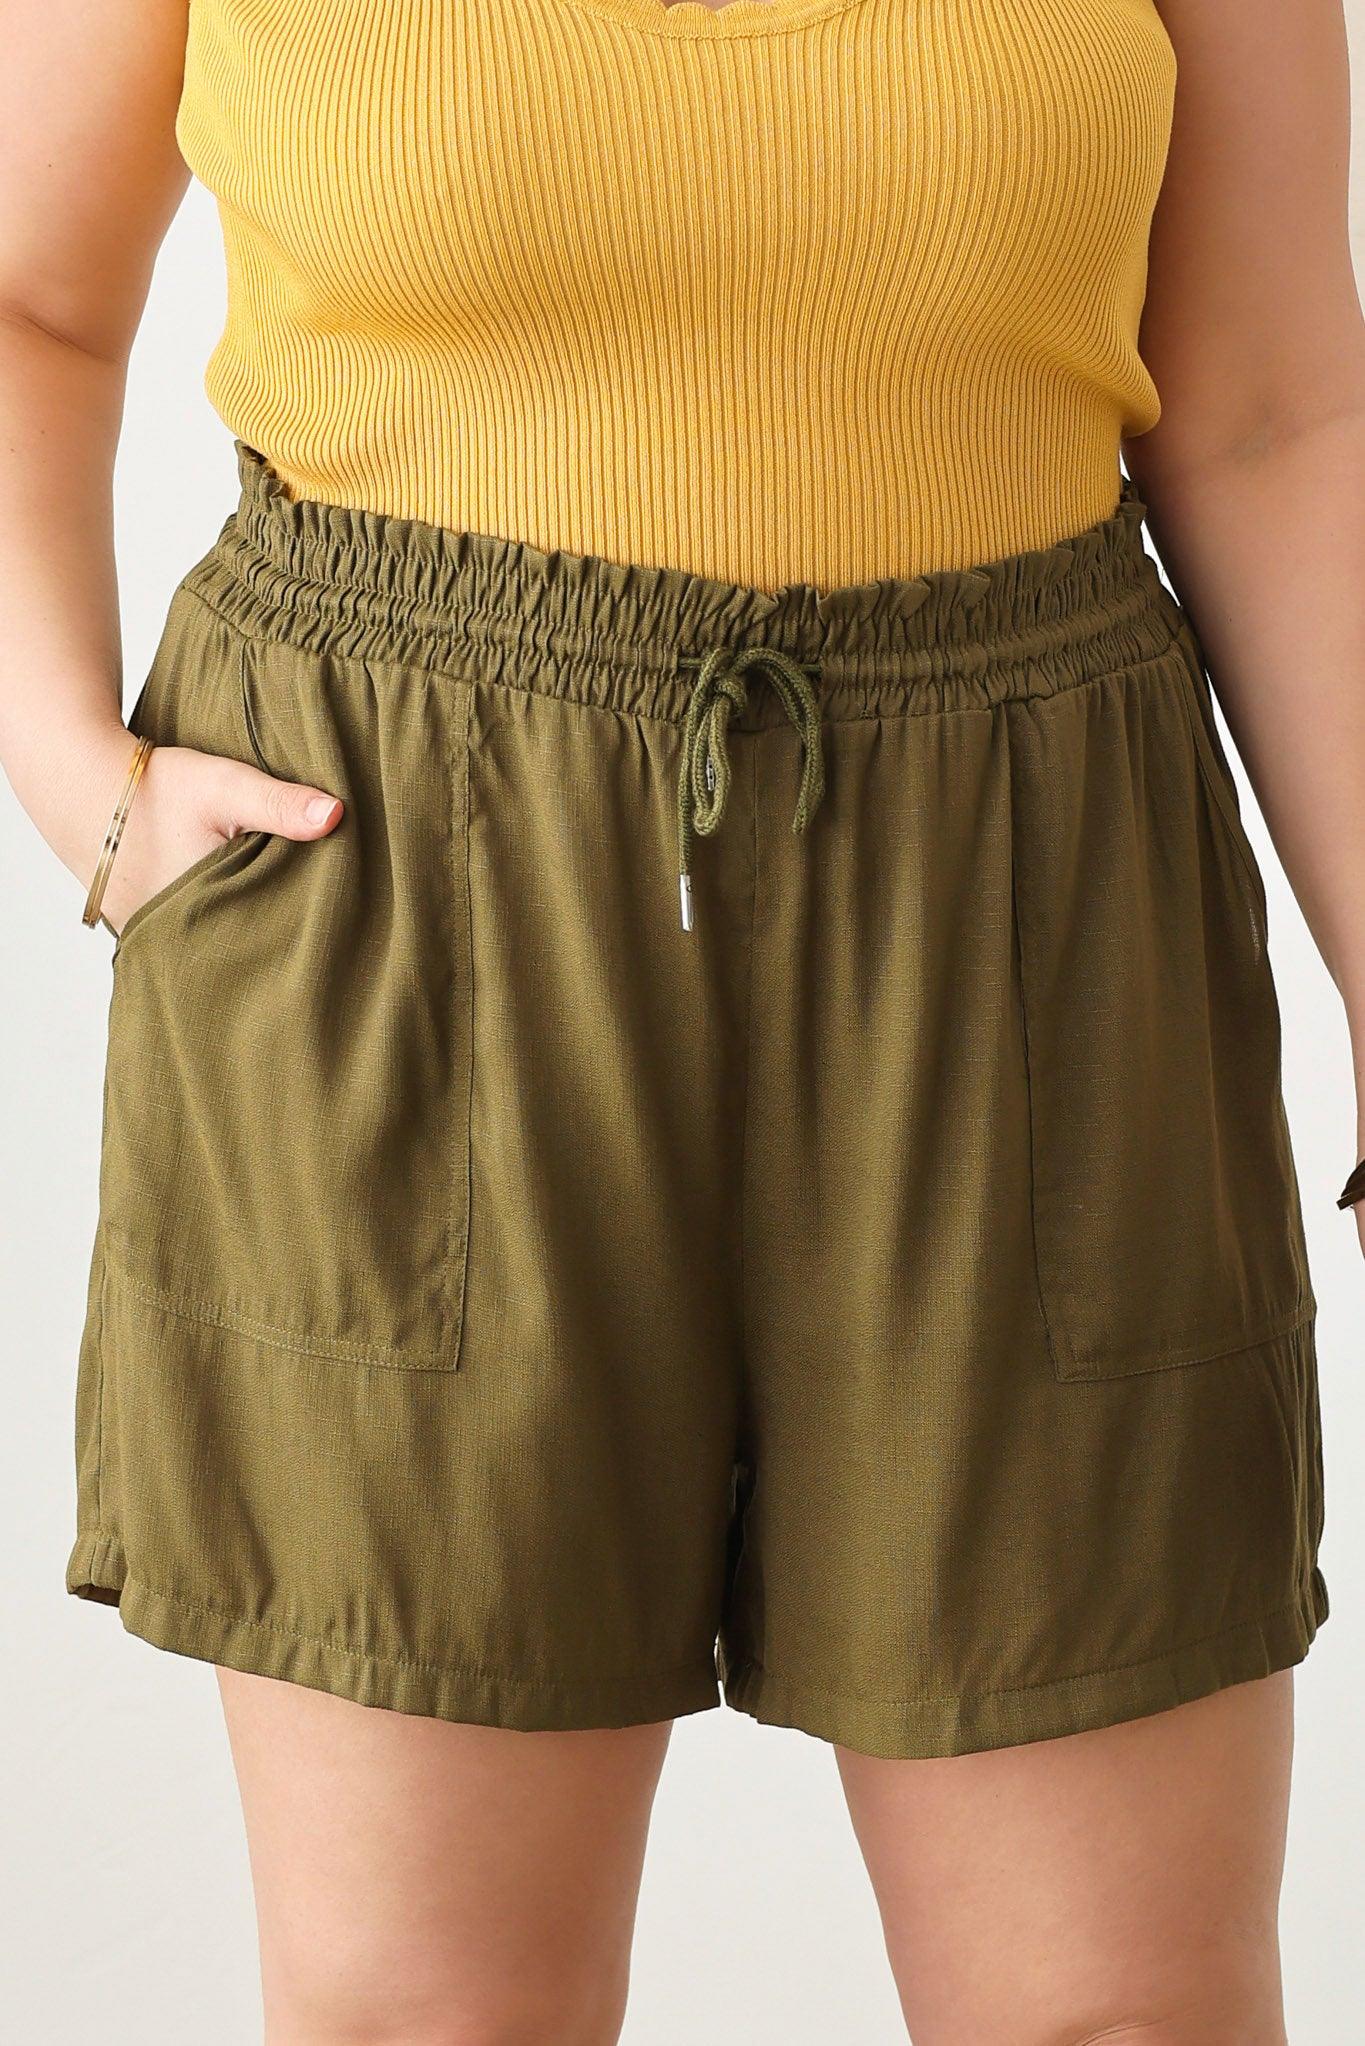 Plus Size two pocket Smocked Band Shorts - Tasha Apparel Wholesale